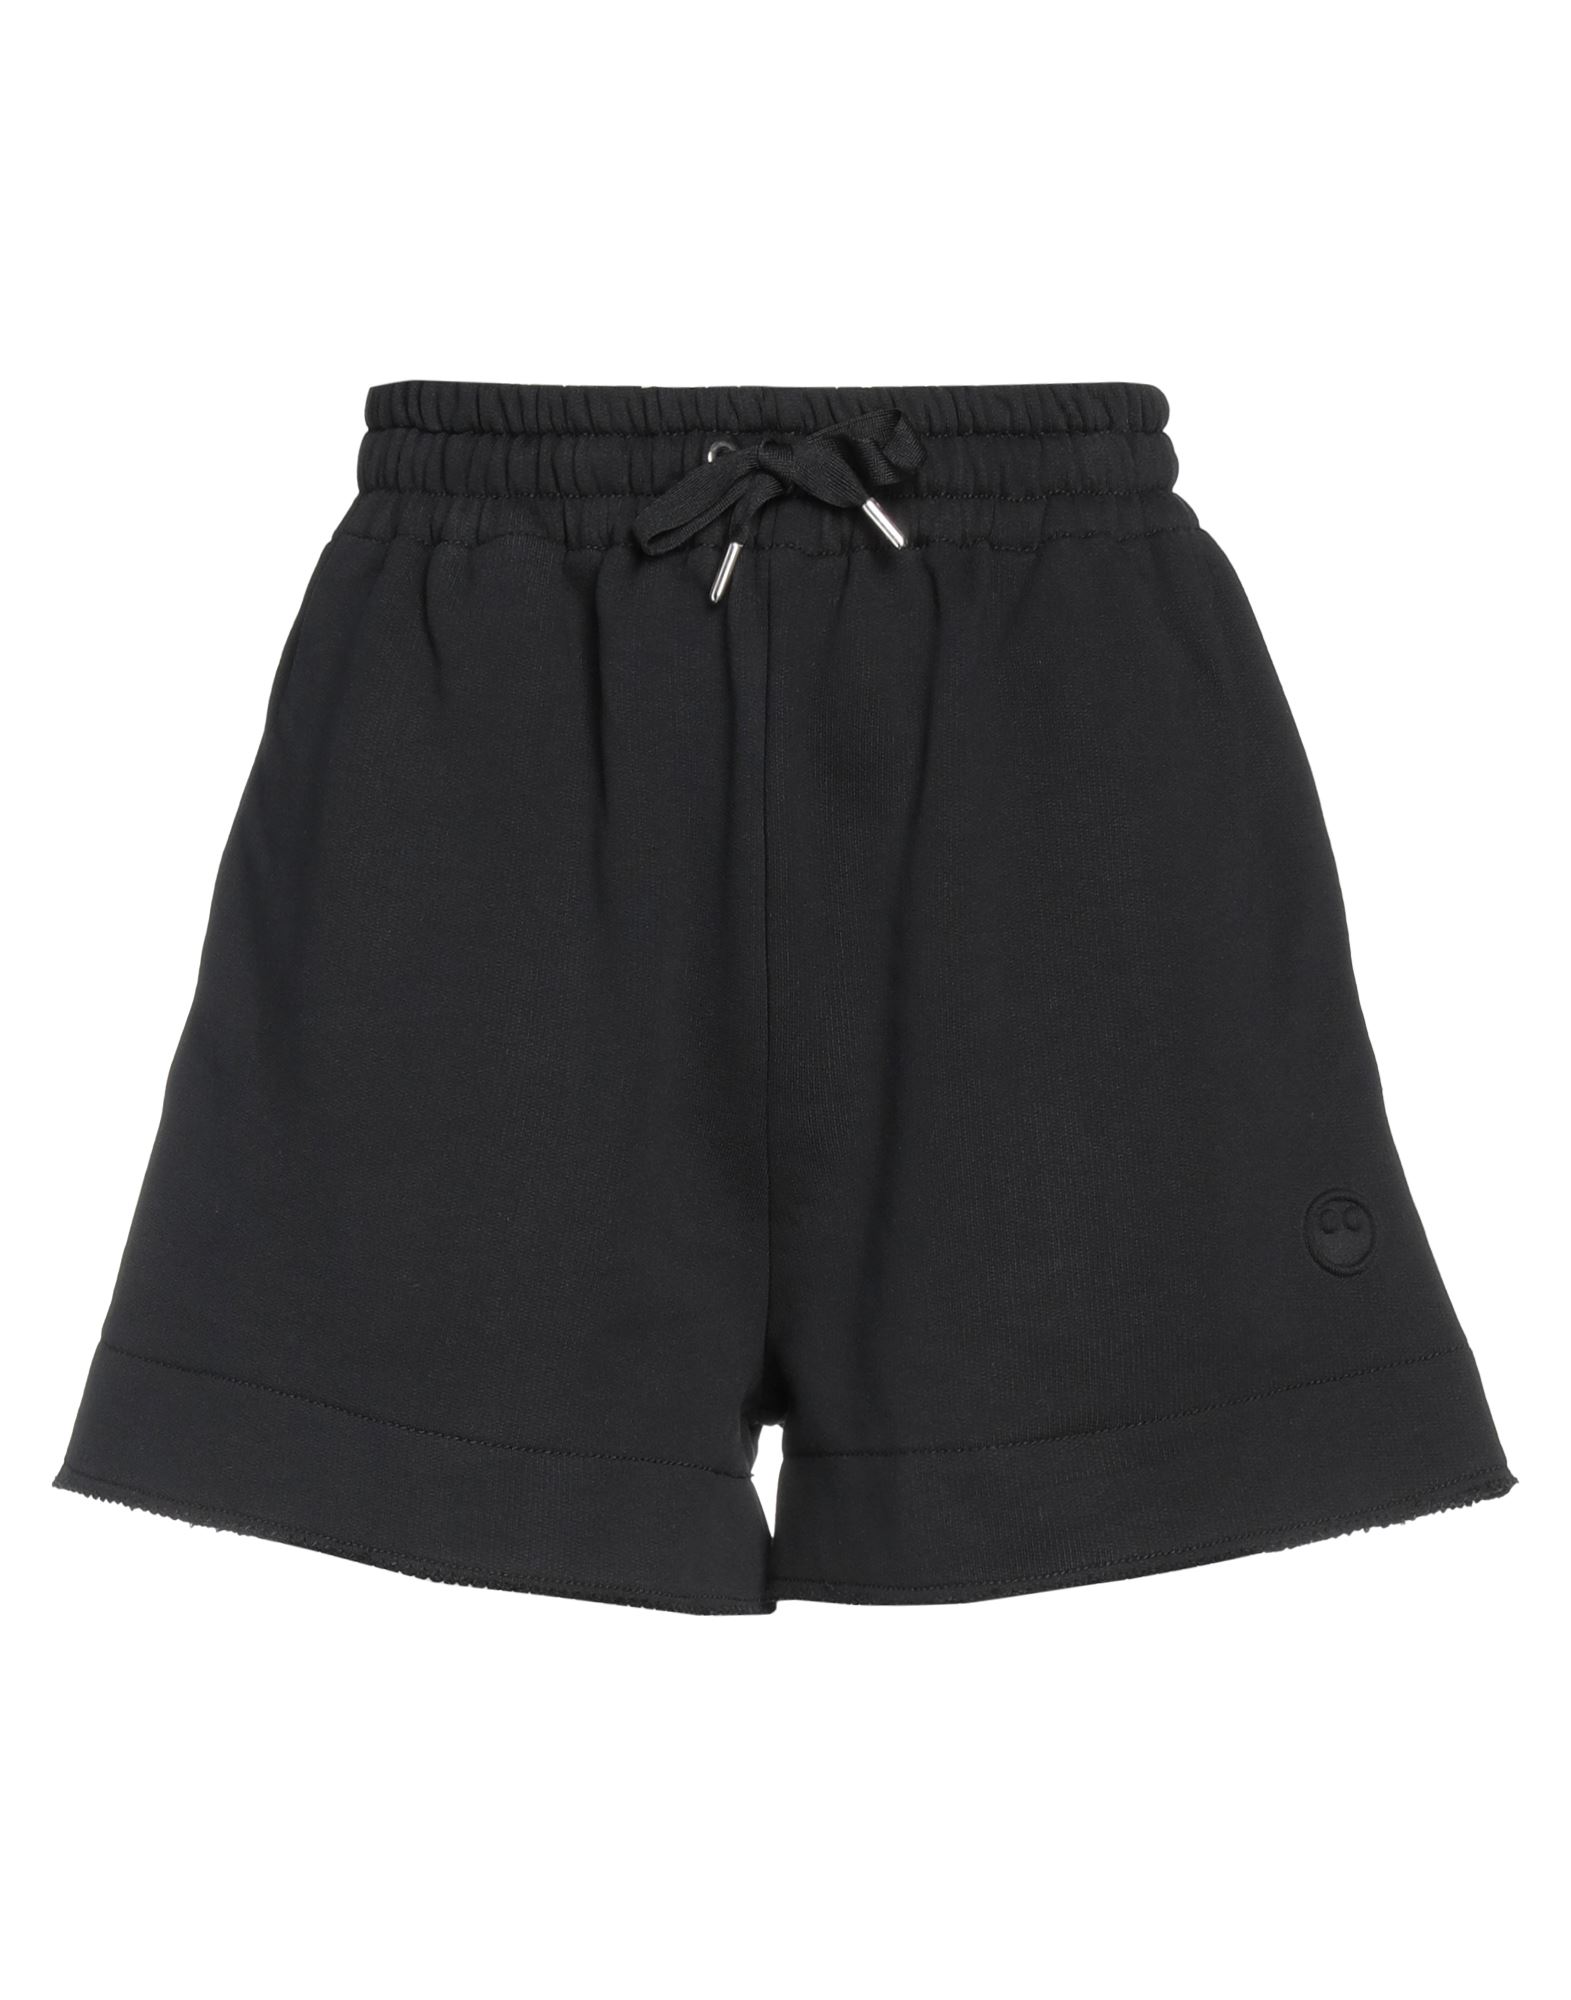 Shop Az Factory Woman Shorts & Bermuda Shorts Black Size L Organic Cotton, Polyester